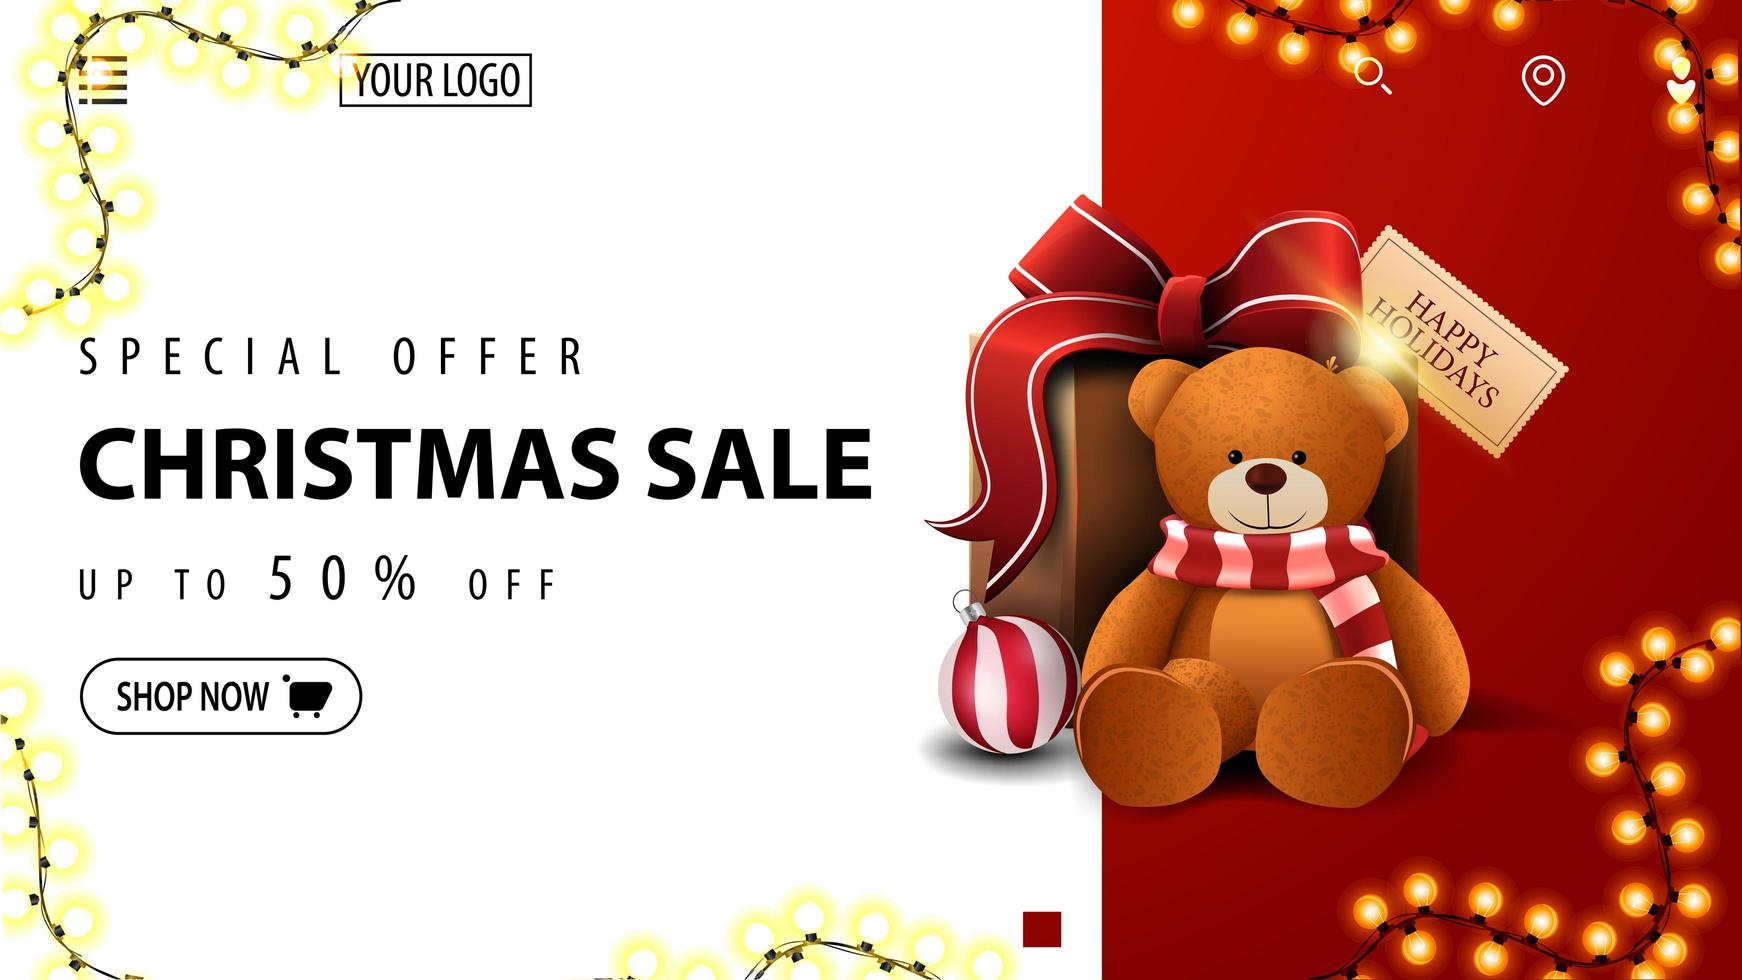 Sonderangebot, Weihnachtsverkauf, bis zu 50 Rabatt, weißes und rotes Rabattbanner für Website mit Geschenk mit Teddybär vektor